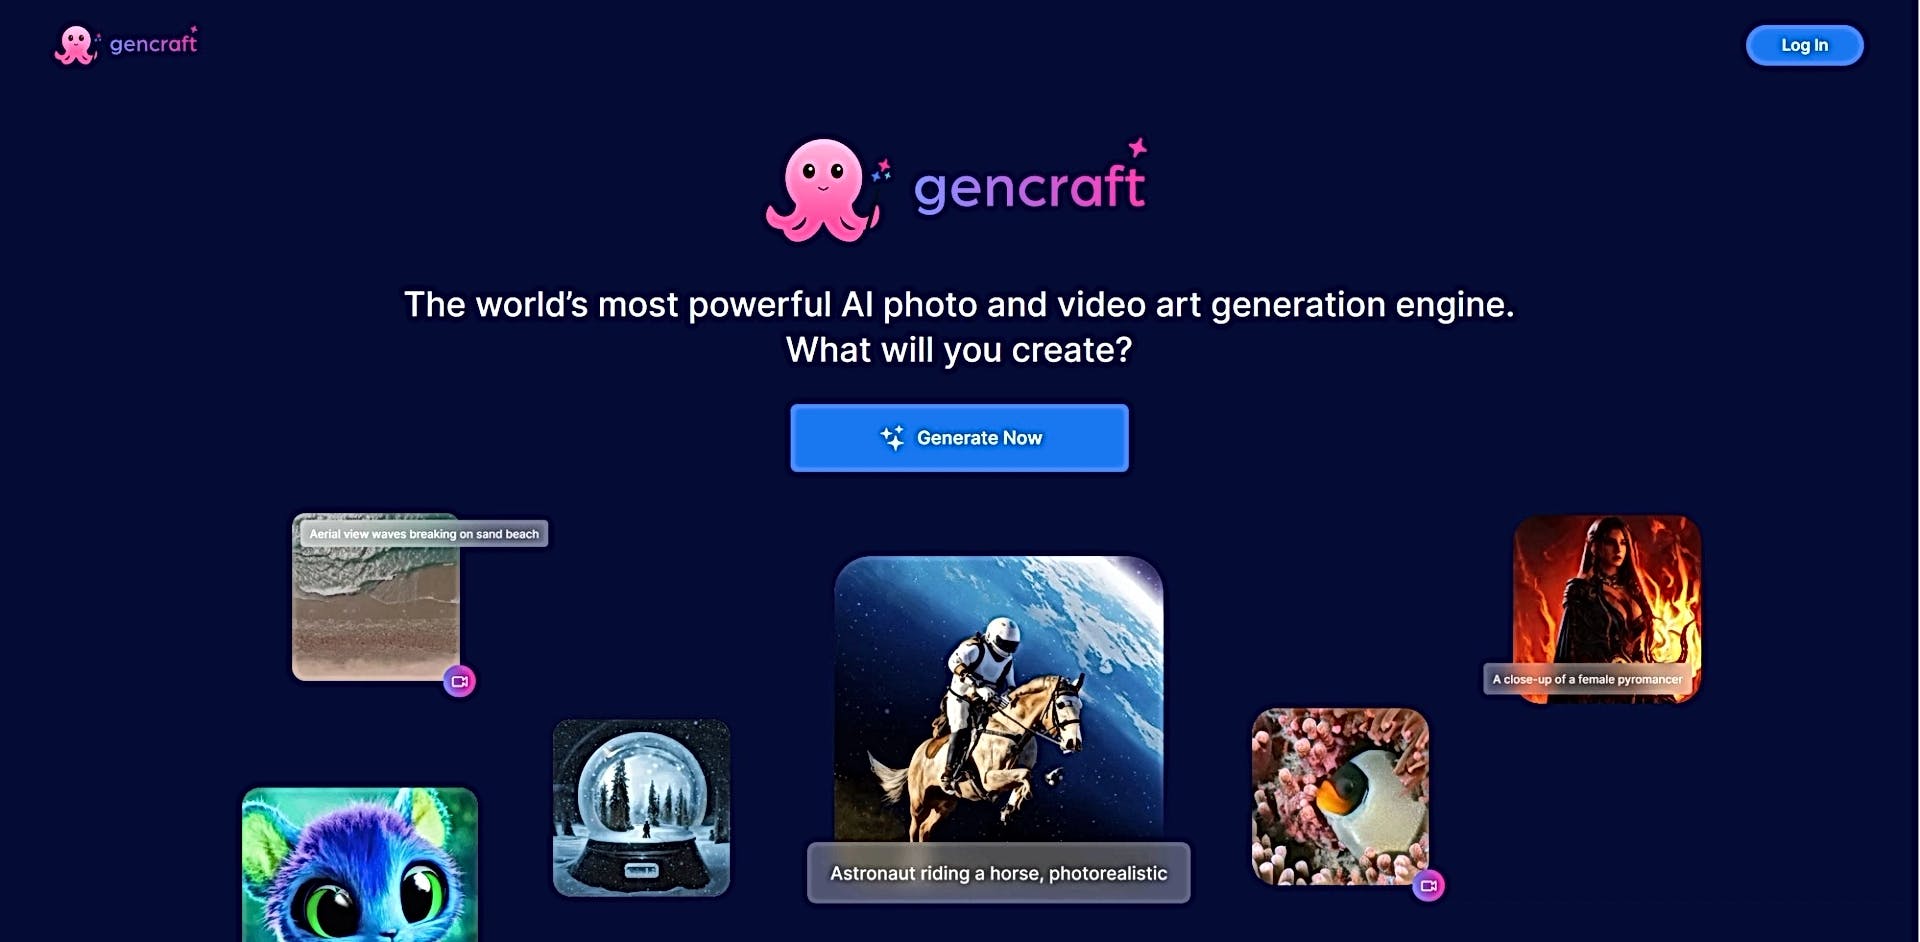 Gencraft featured